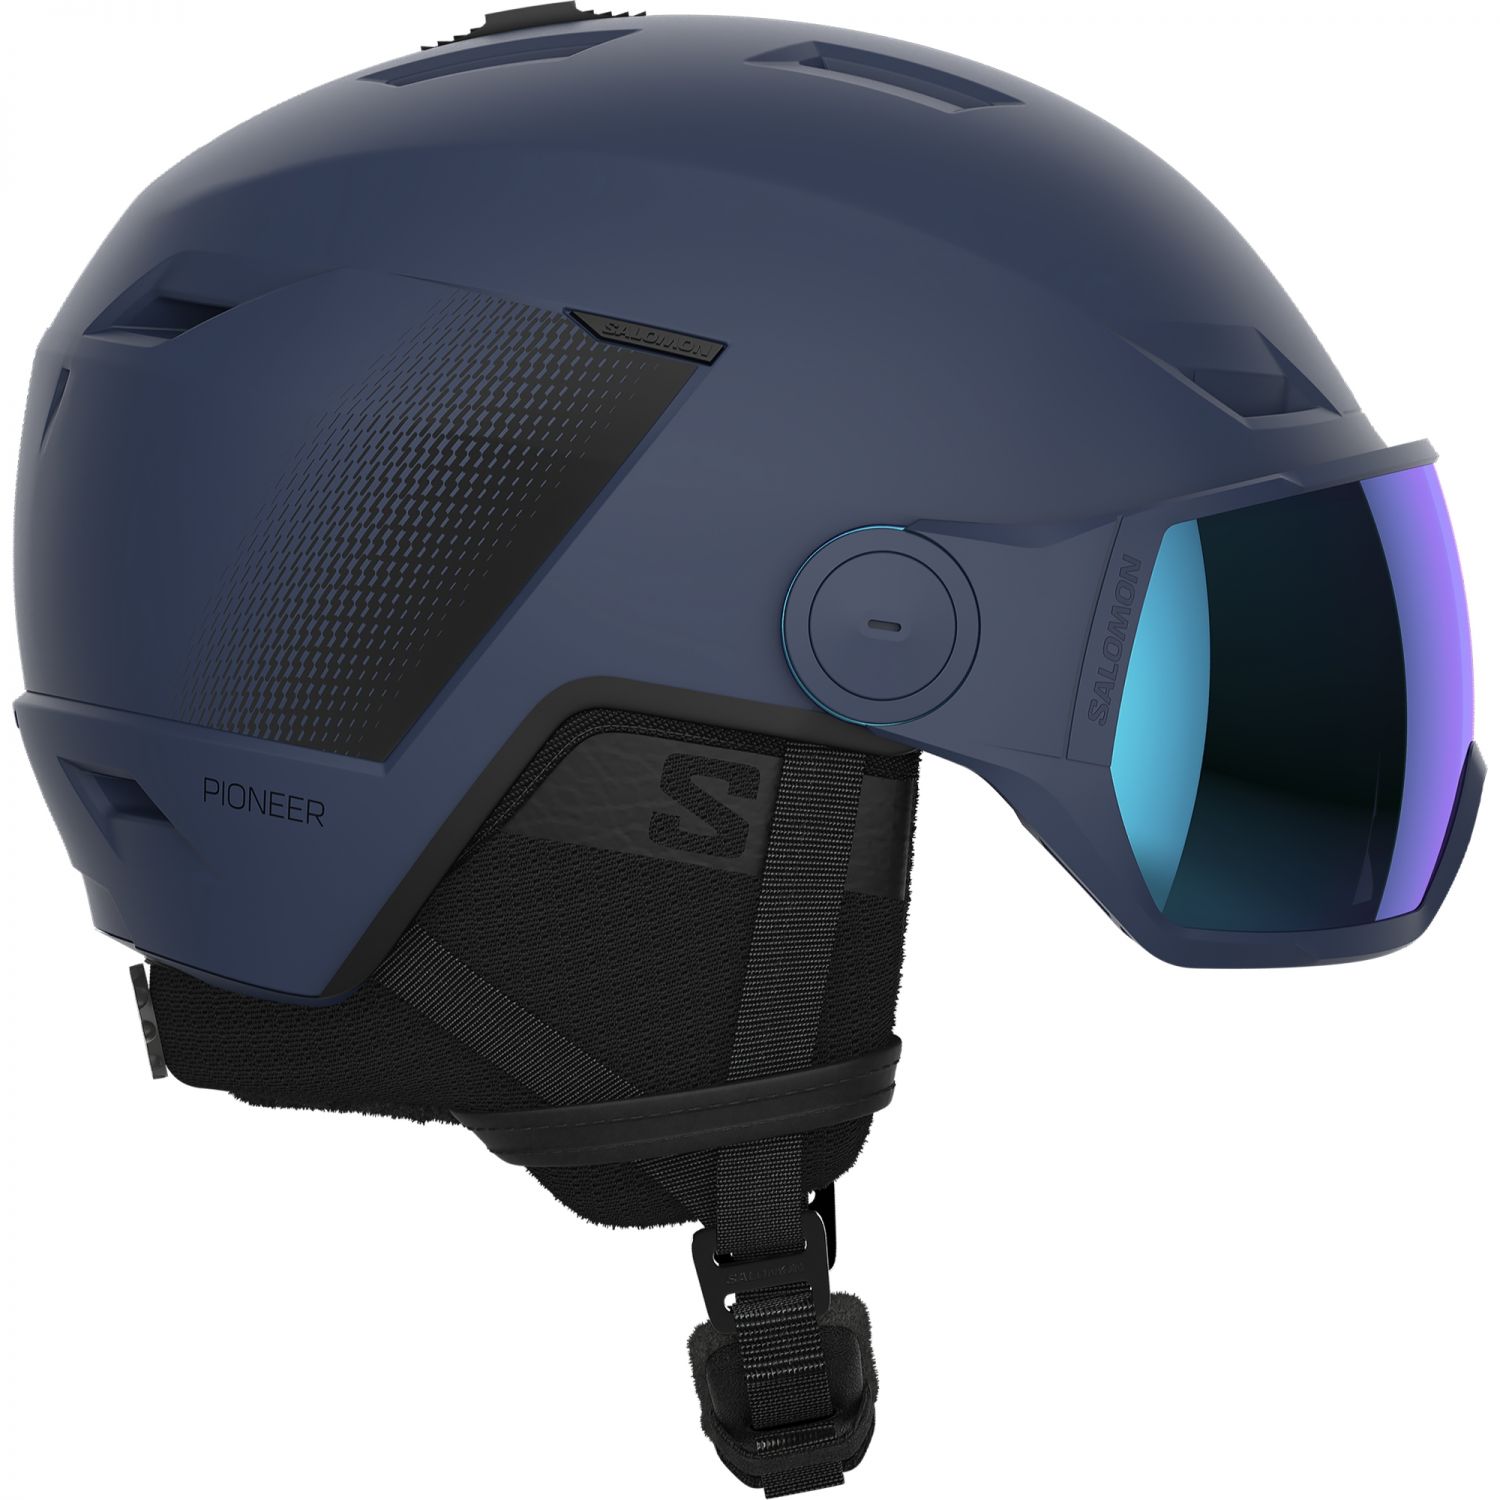 Salomon Pioneer LT Visor, skihjelm med visir, blå